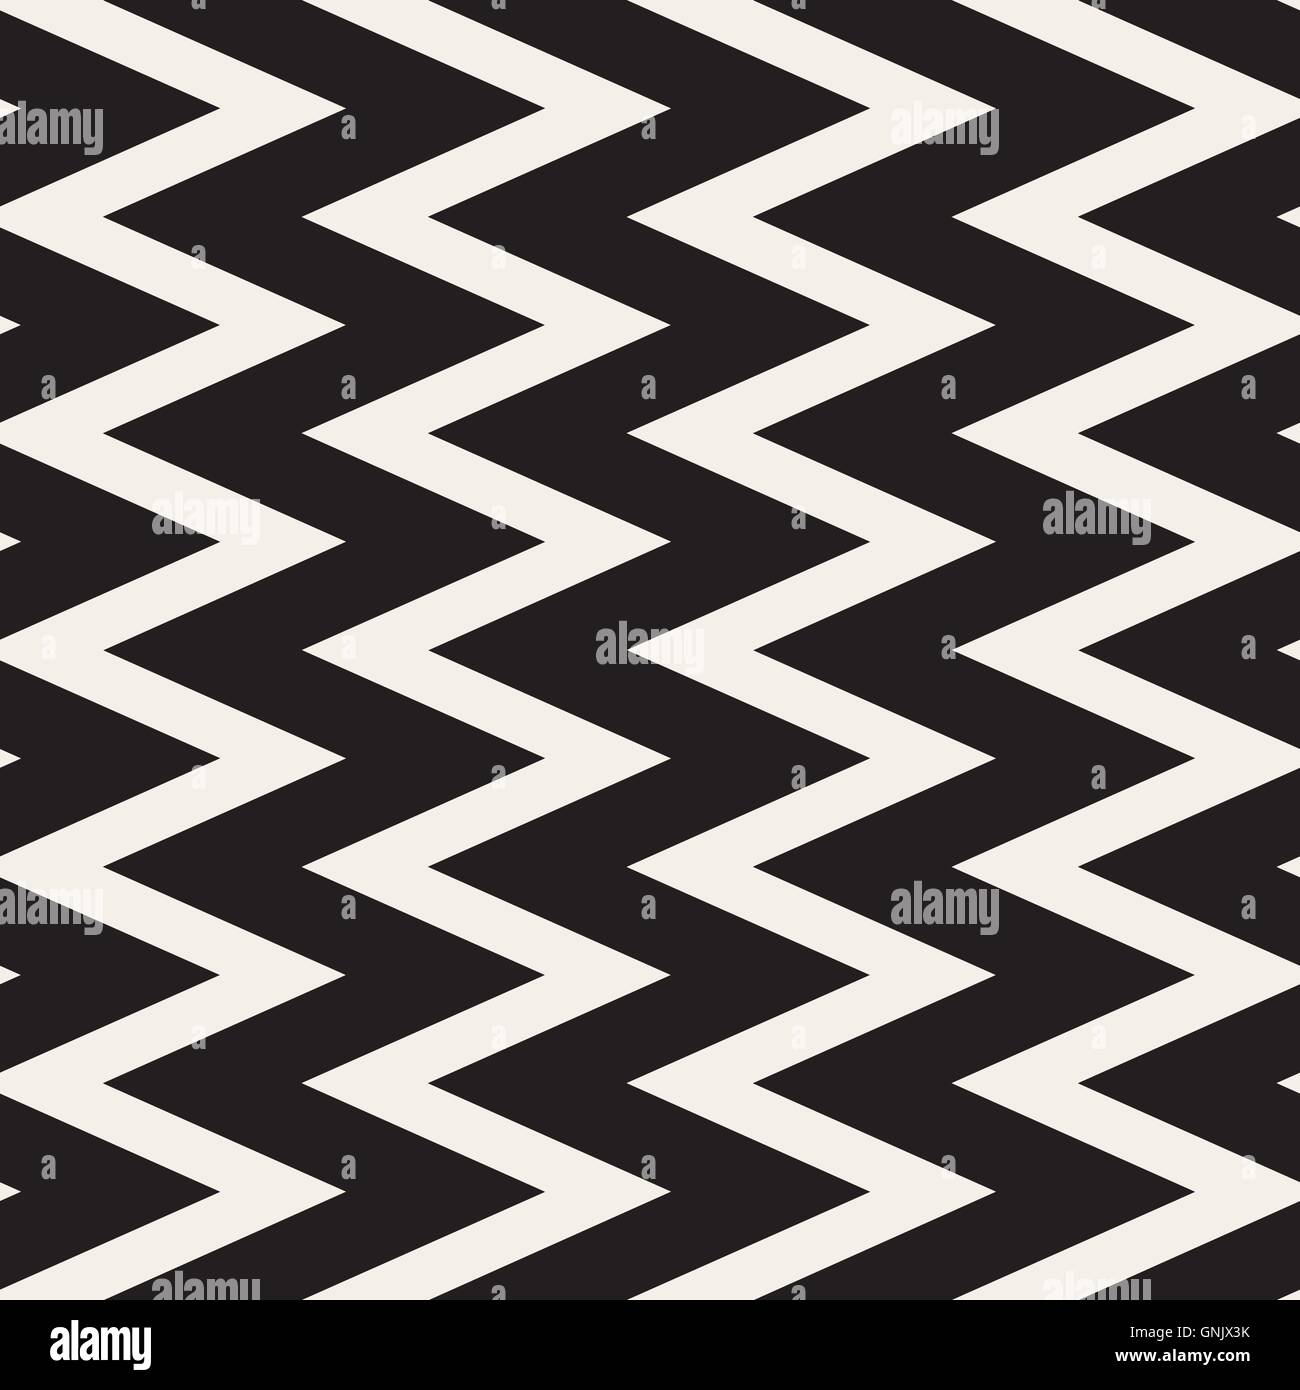 Seamless Vector noir et blanc motif géométrique des lignes en ZigZag Illustration de Vecteur